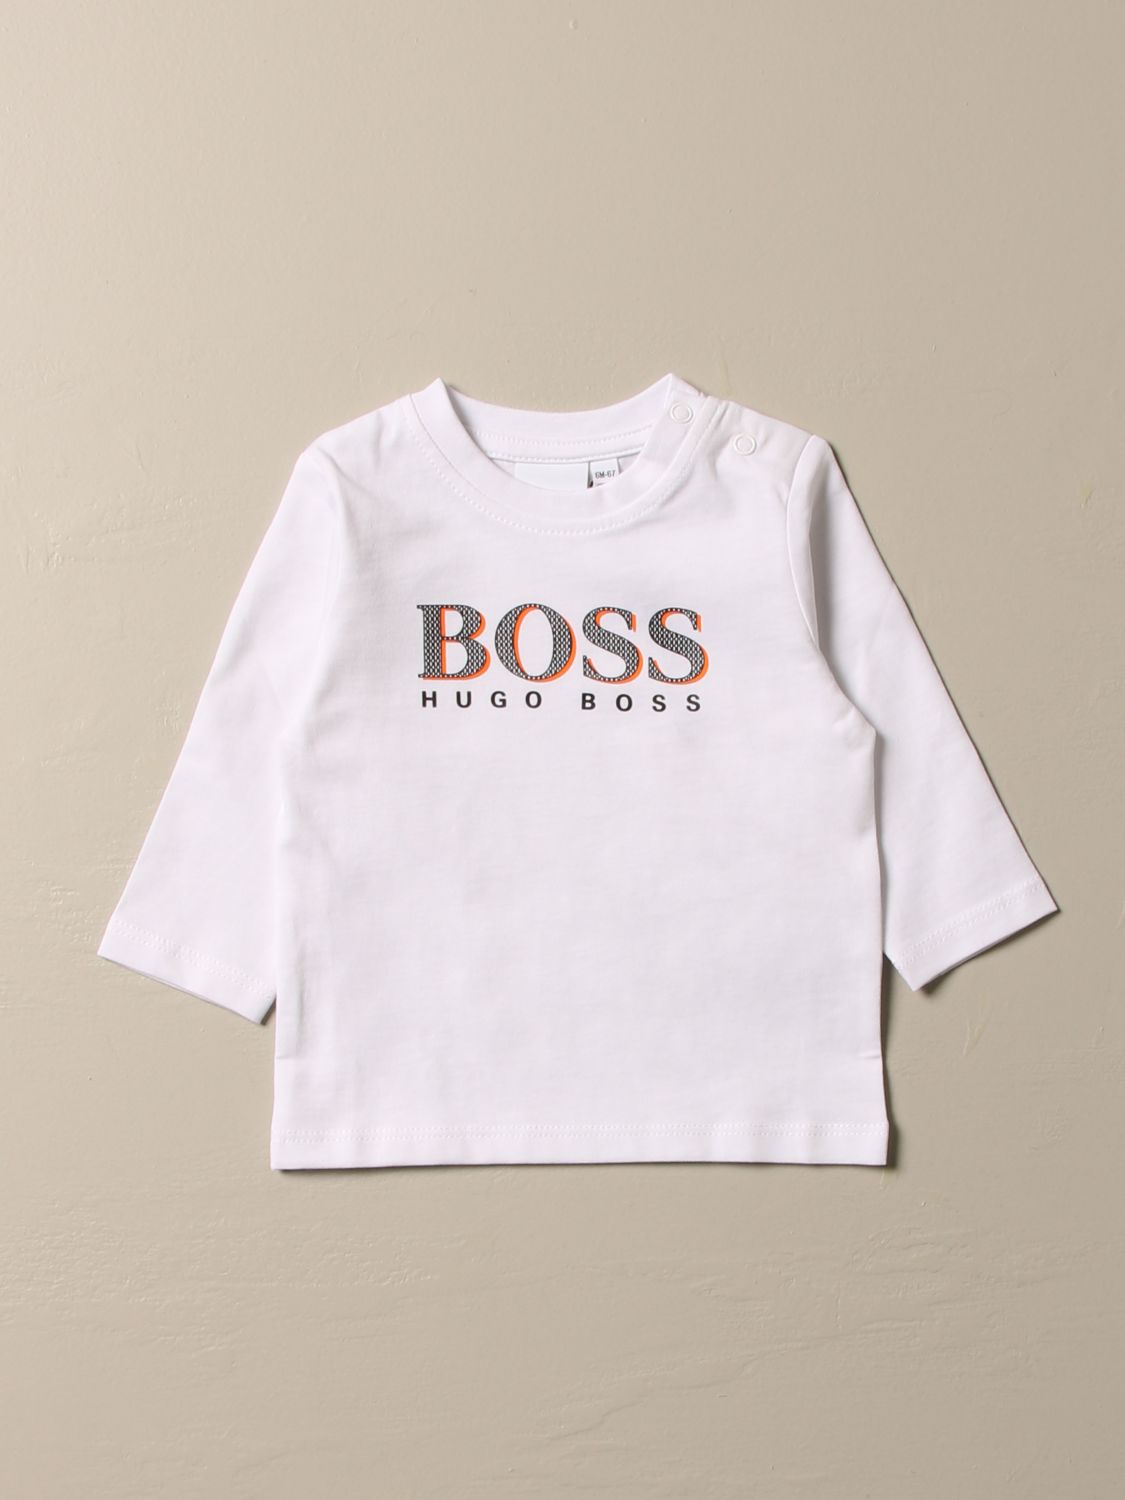 hugo boss kids tshirts